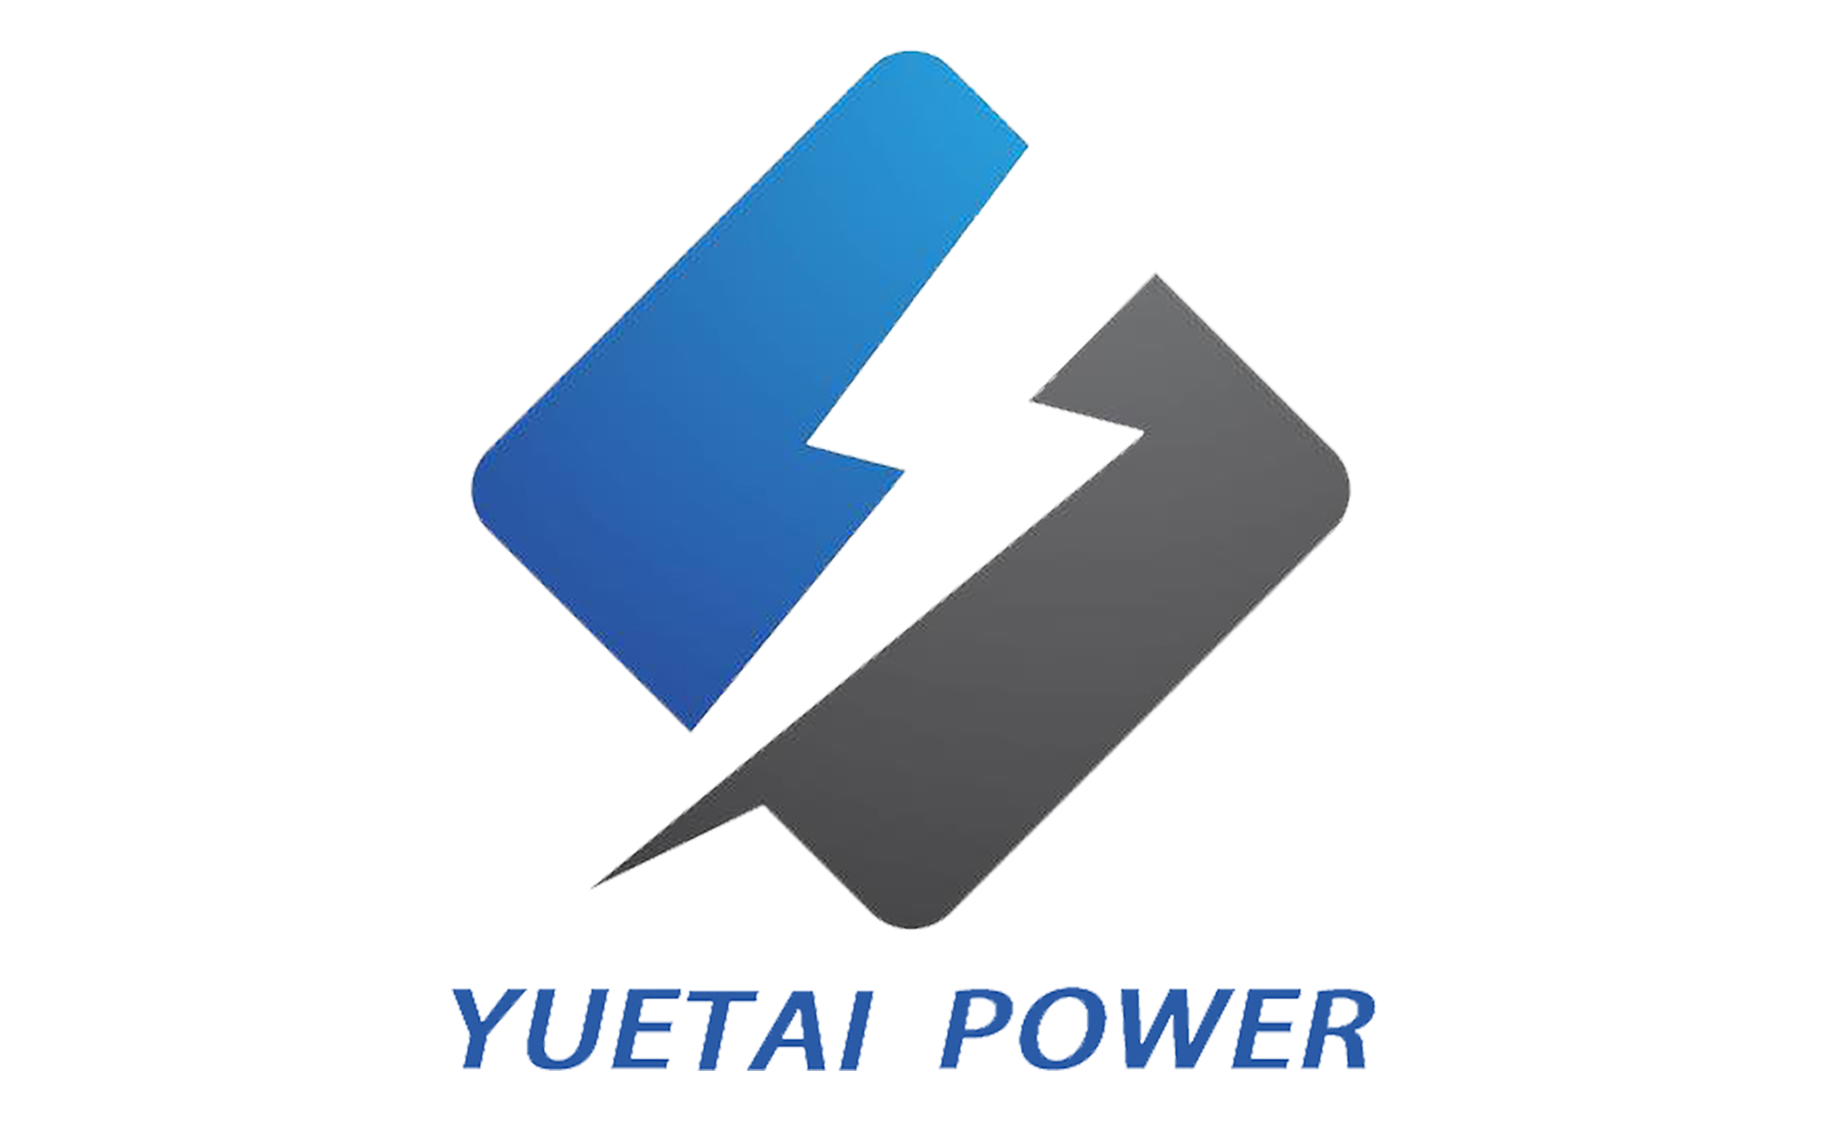 约泰电力logo